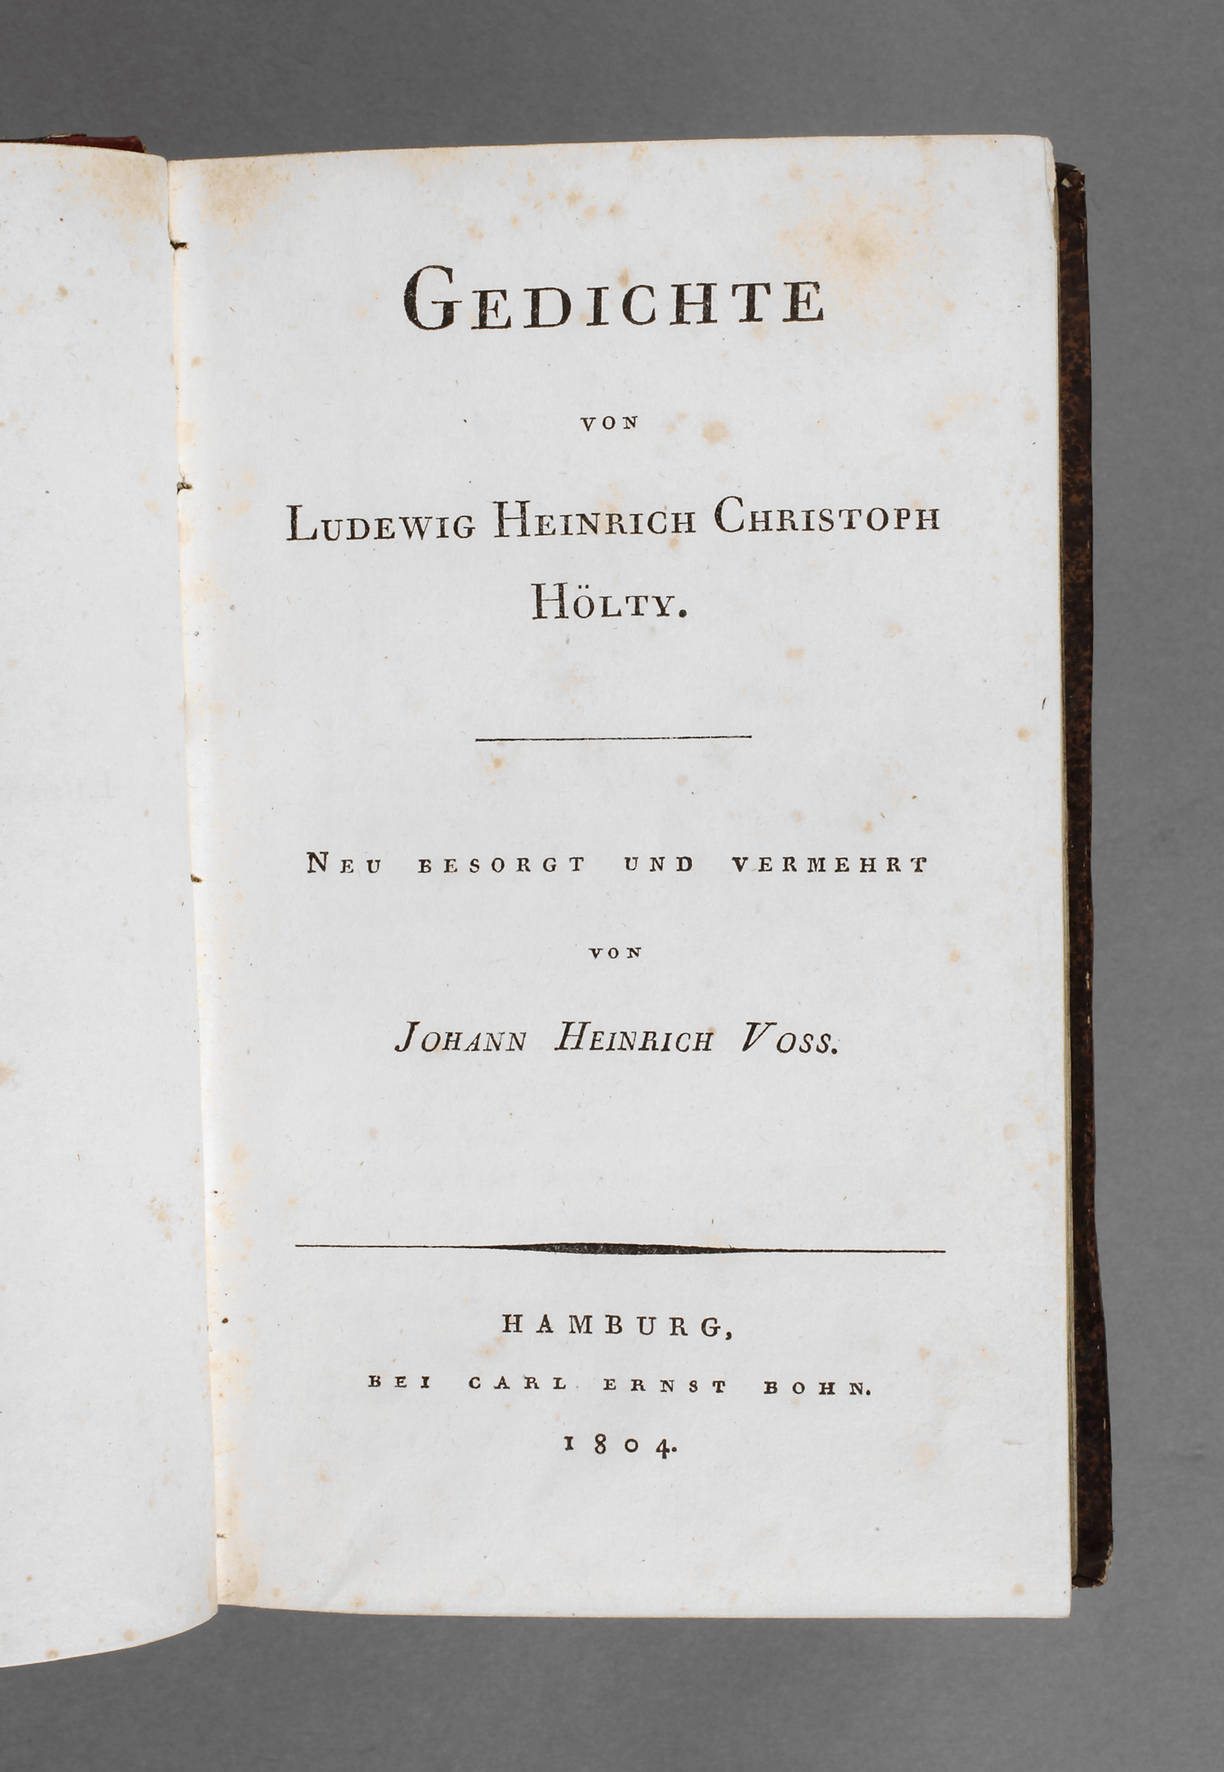 Gedichtband Hölty 1804